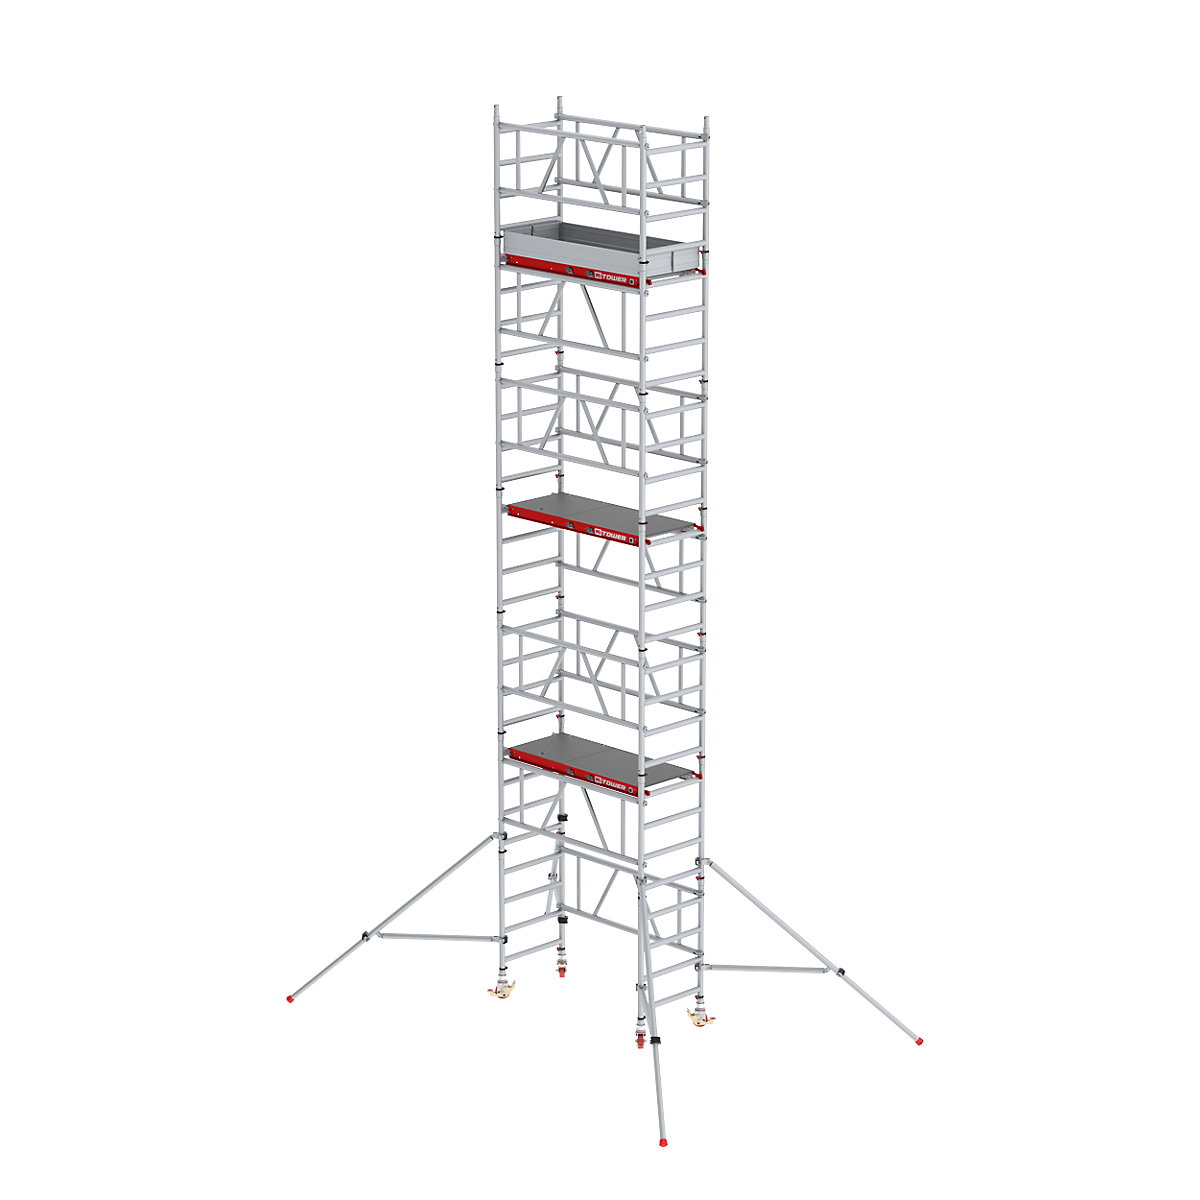 Hitro sestavljiv pomični oder MiTOWER Plus – Altrex, ploščad Fiber-Deck®, delovna višina 8 m